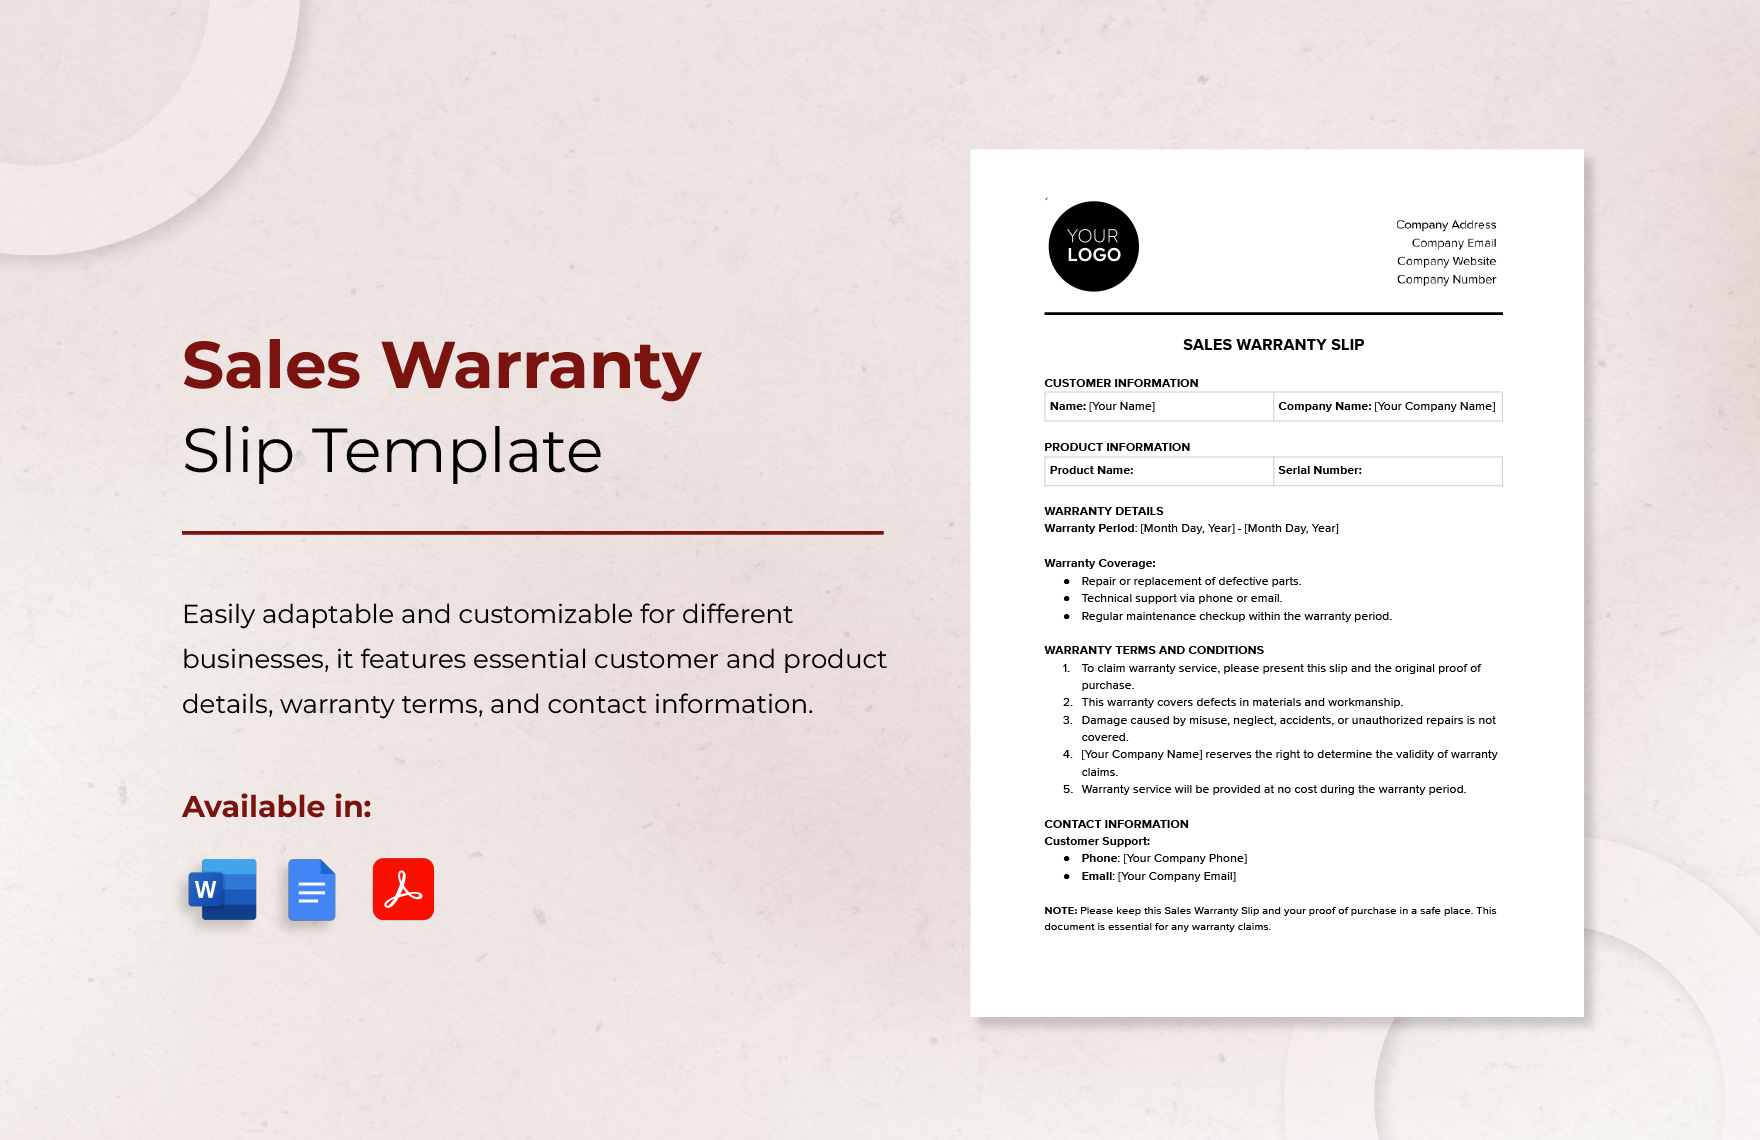 Sales Warranty Slip Template